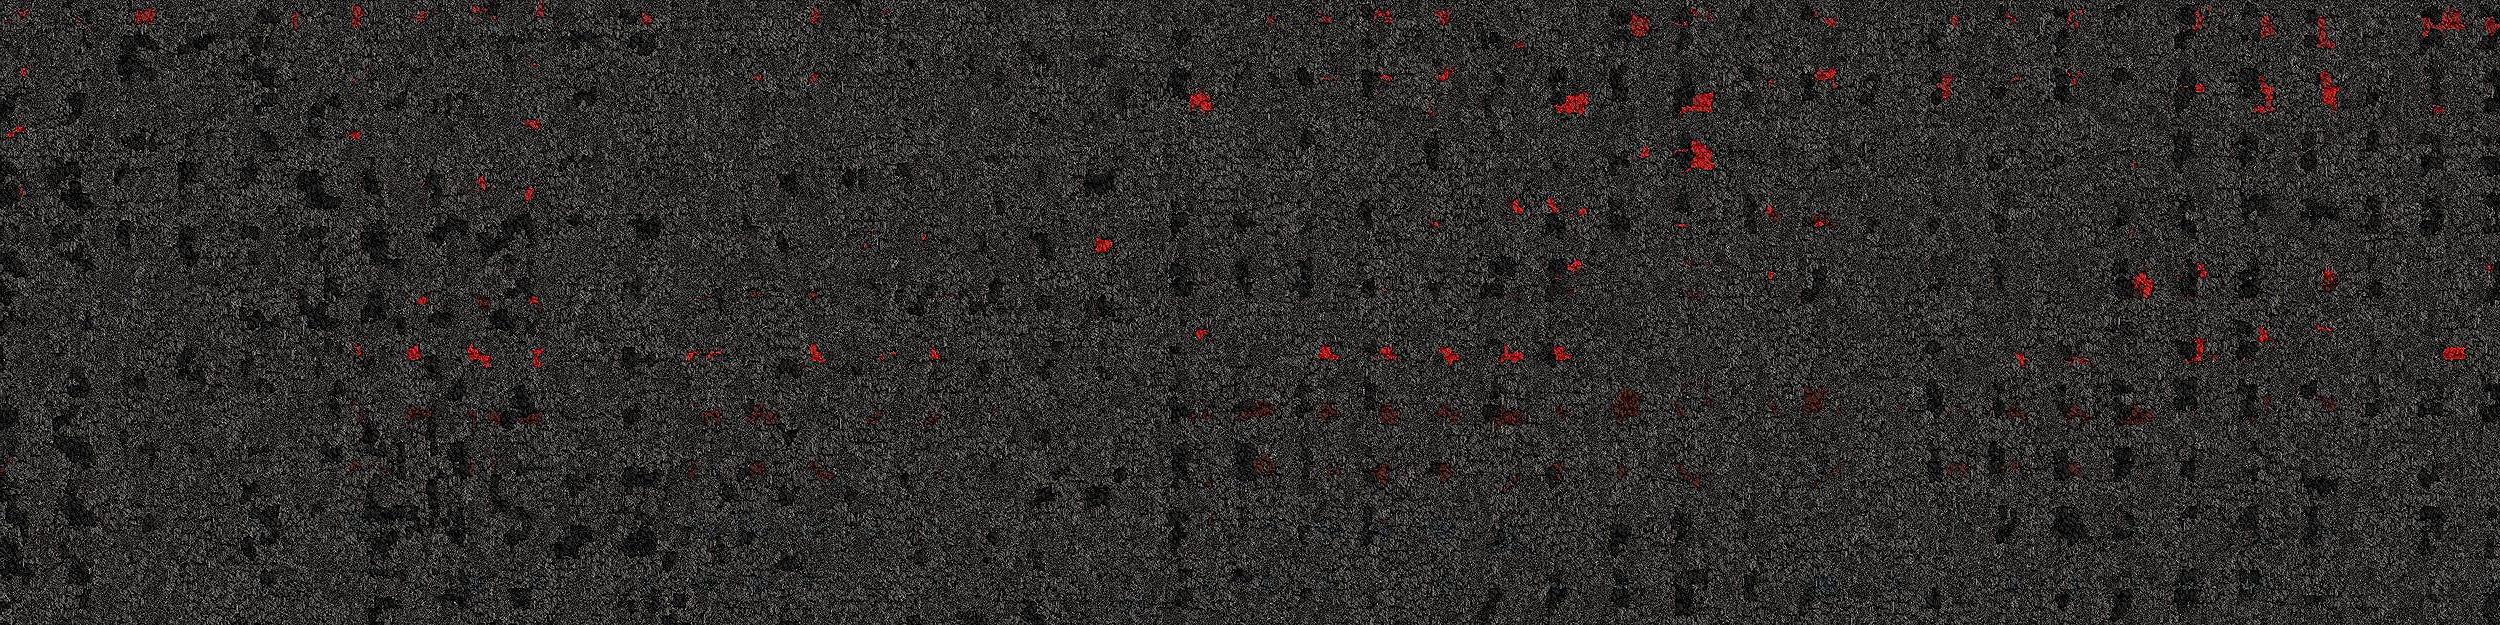 Speckled Carpet Tile In Eclipse imagen número 5